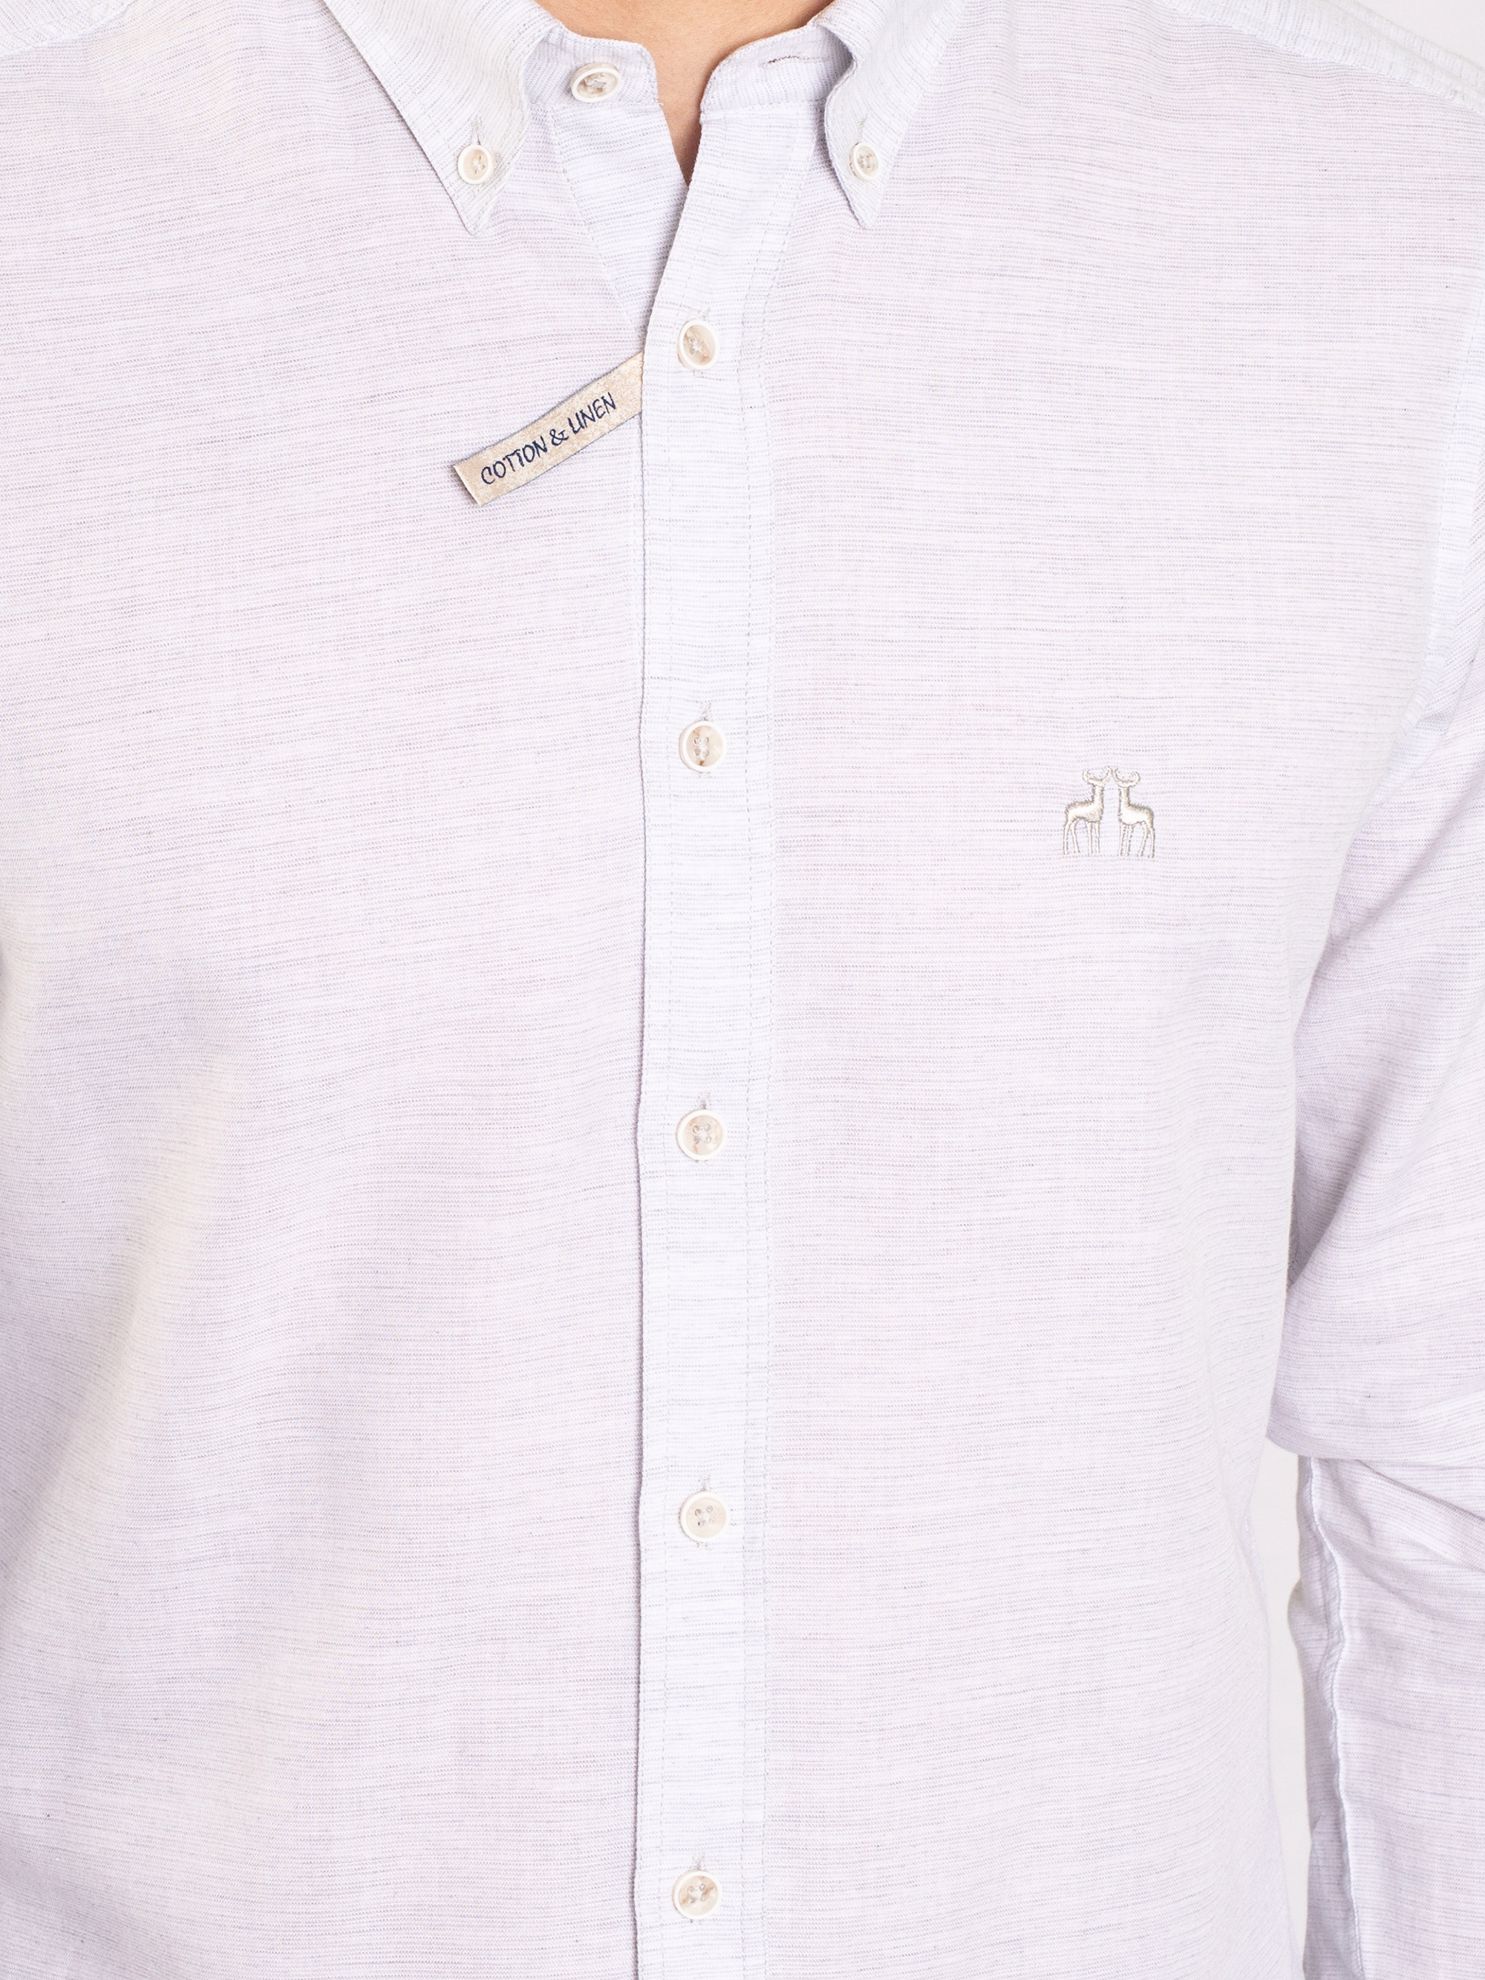 Karaca Erkek Slim Fit Gömlek-Gri. ürün görseli